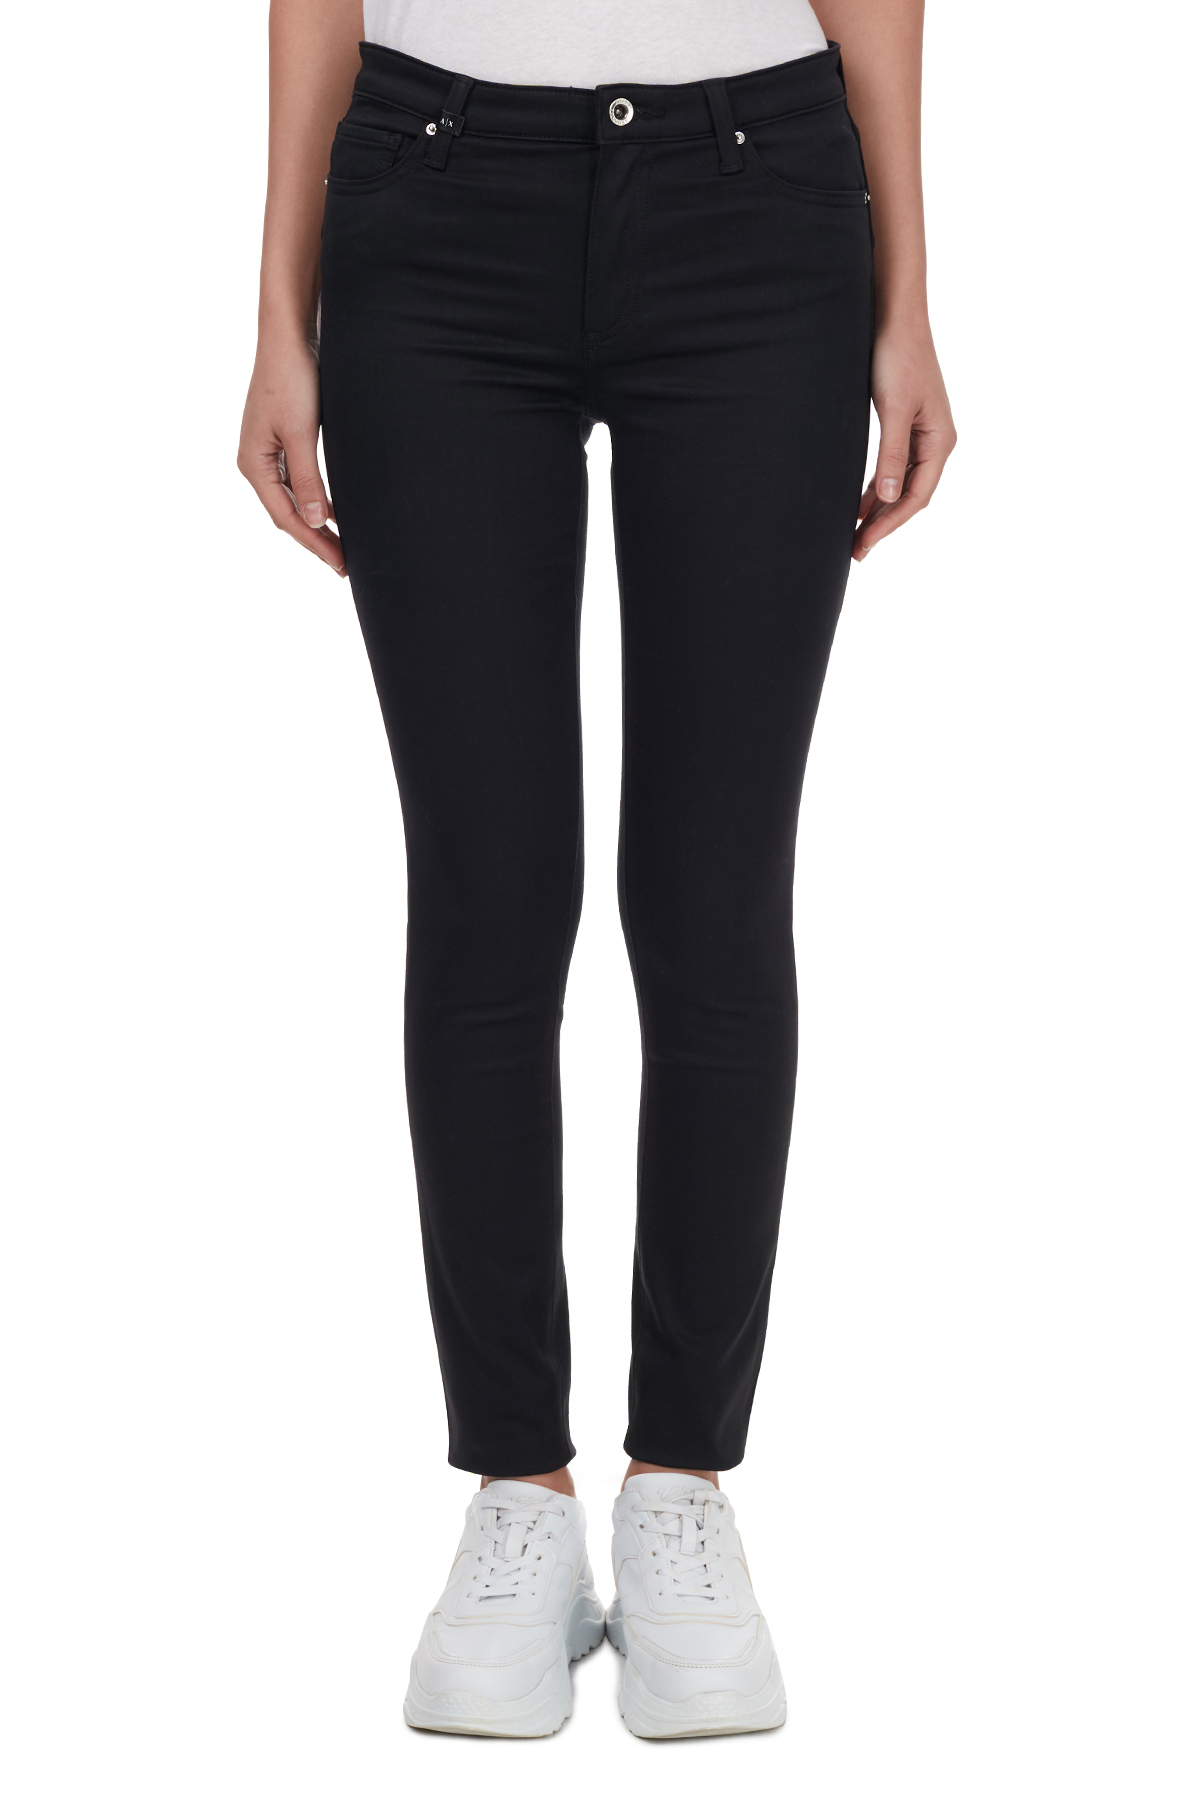 Armani Exchange Süper Skinny Fit J69 Jeans Bayan Kot Pantolon 6HYJ69 Y2QMZ 0204 SİYAH